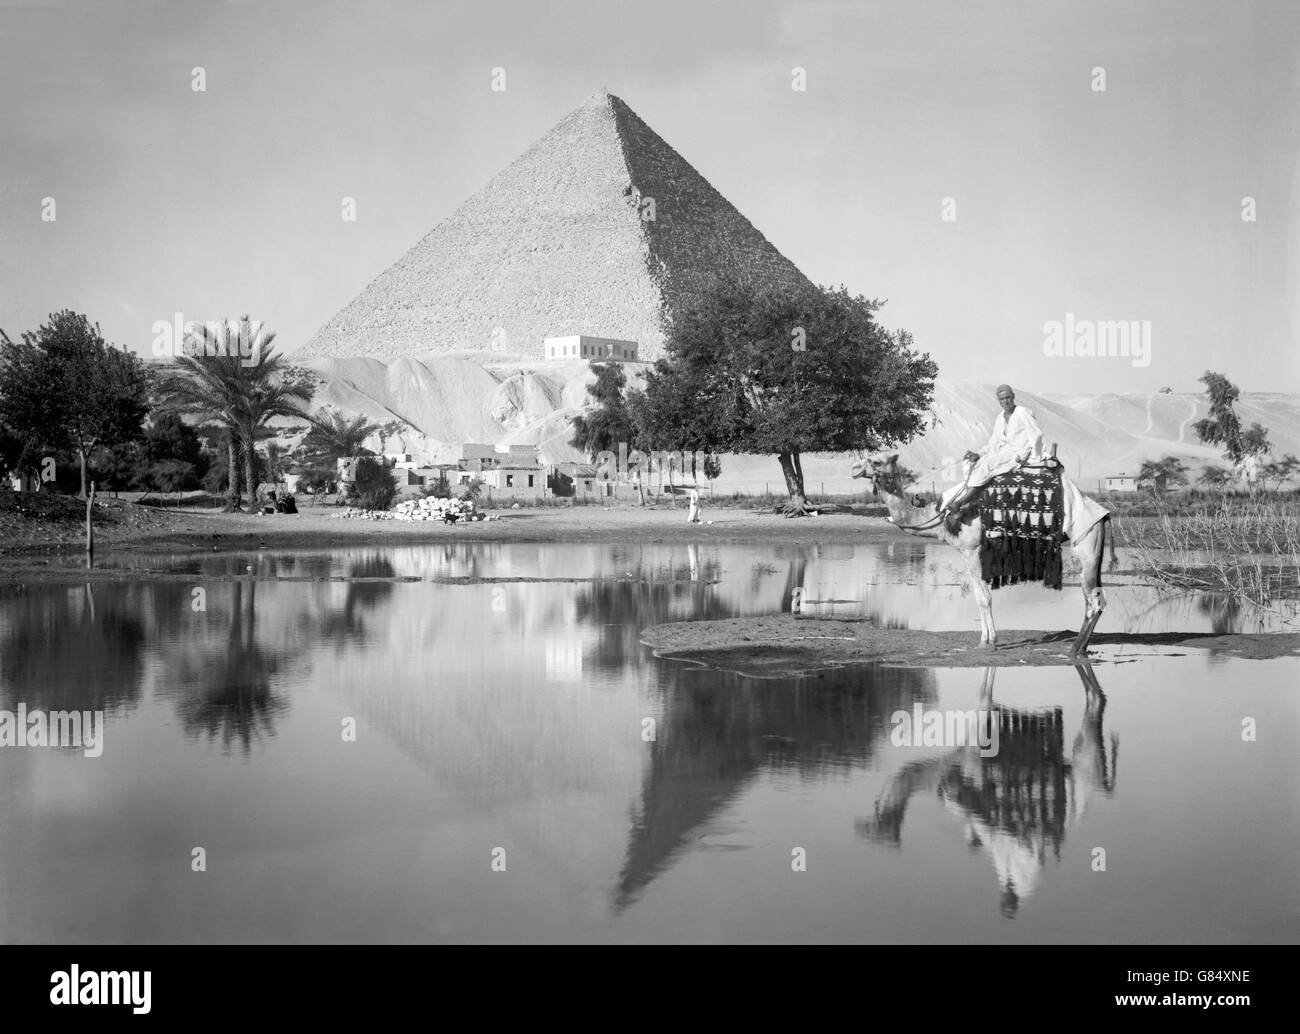 Die große Pyramide von Gizeh im frühen 20. Jahrhundert. Foto von 1934 bis 1939 von American Colony Foto-Abteilung. Stockfoto